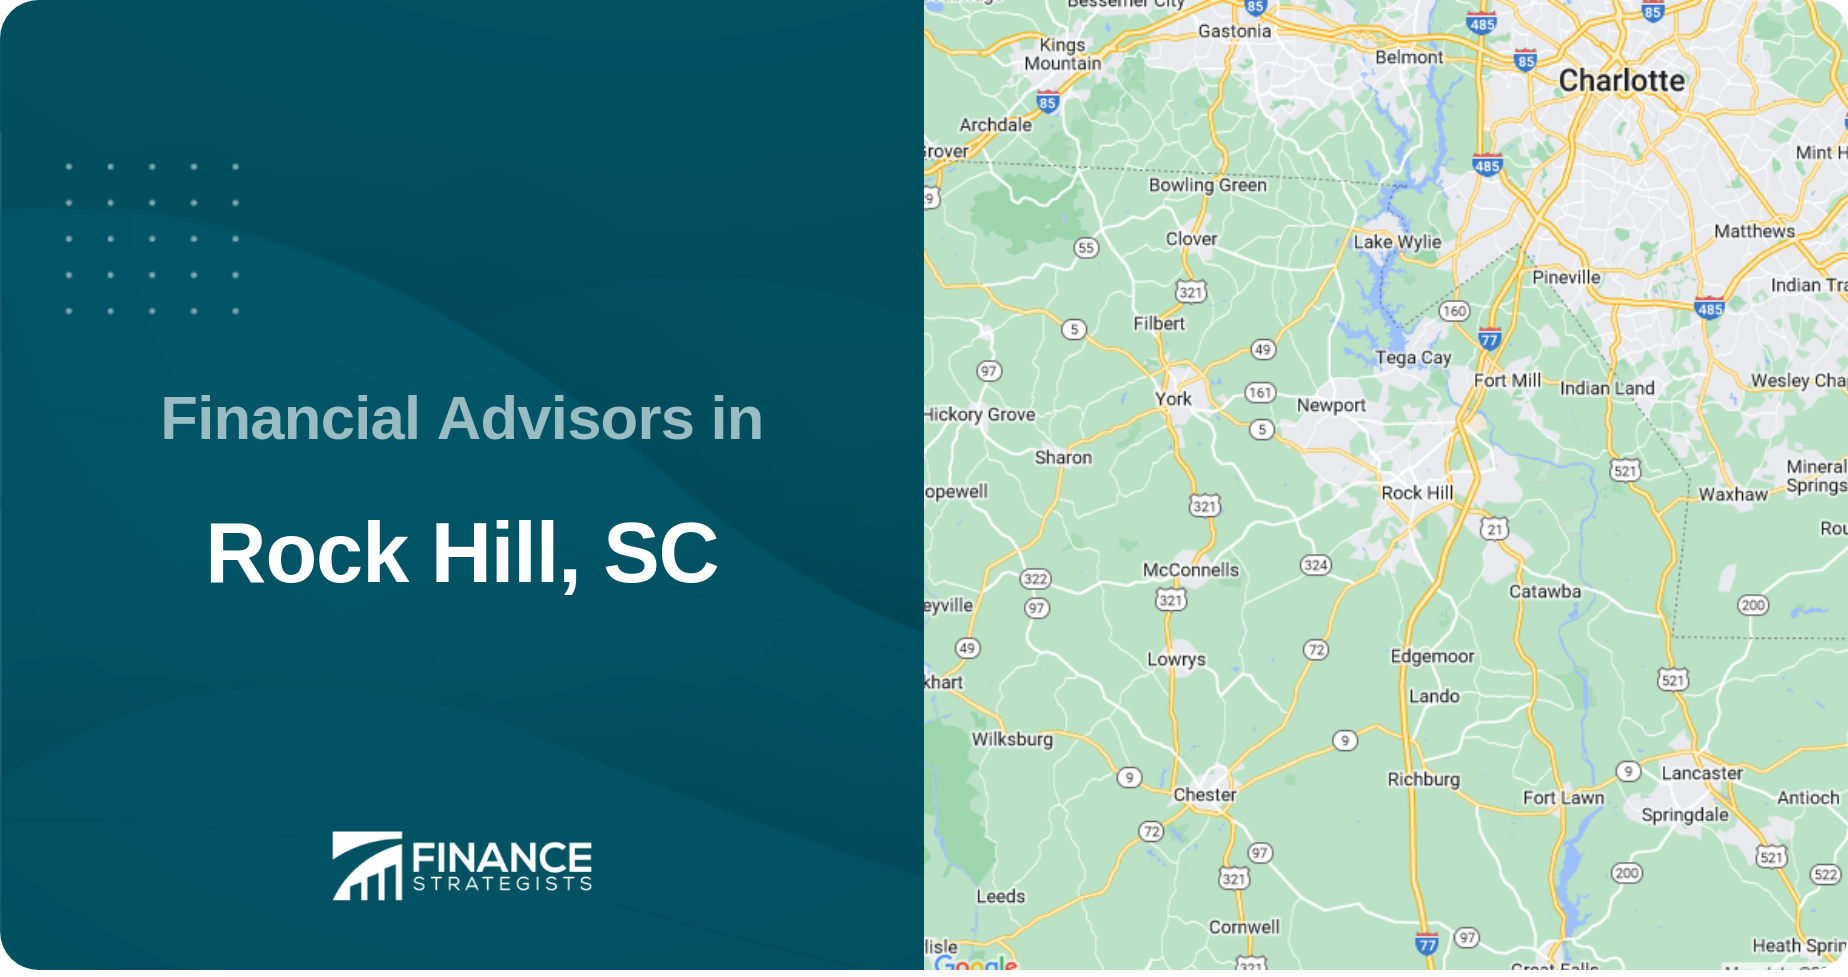 Financial Advisors in Rock Hill, SC